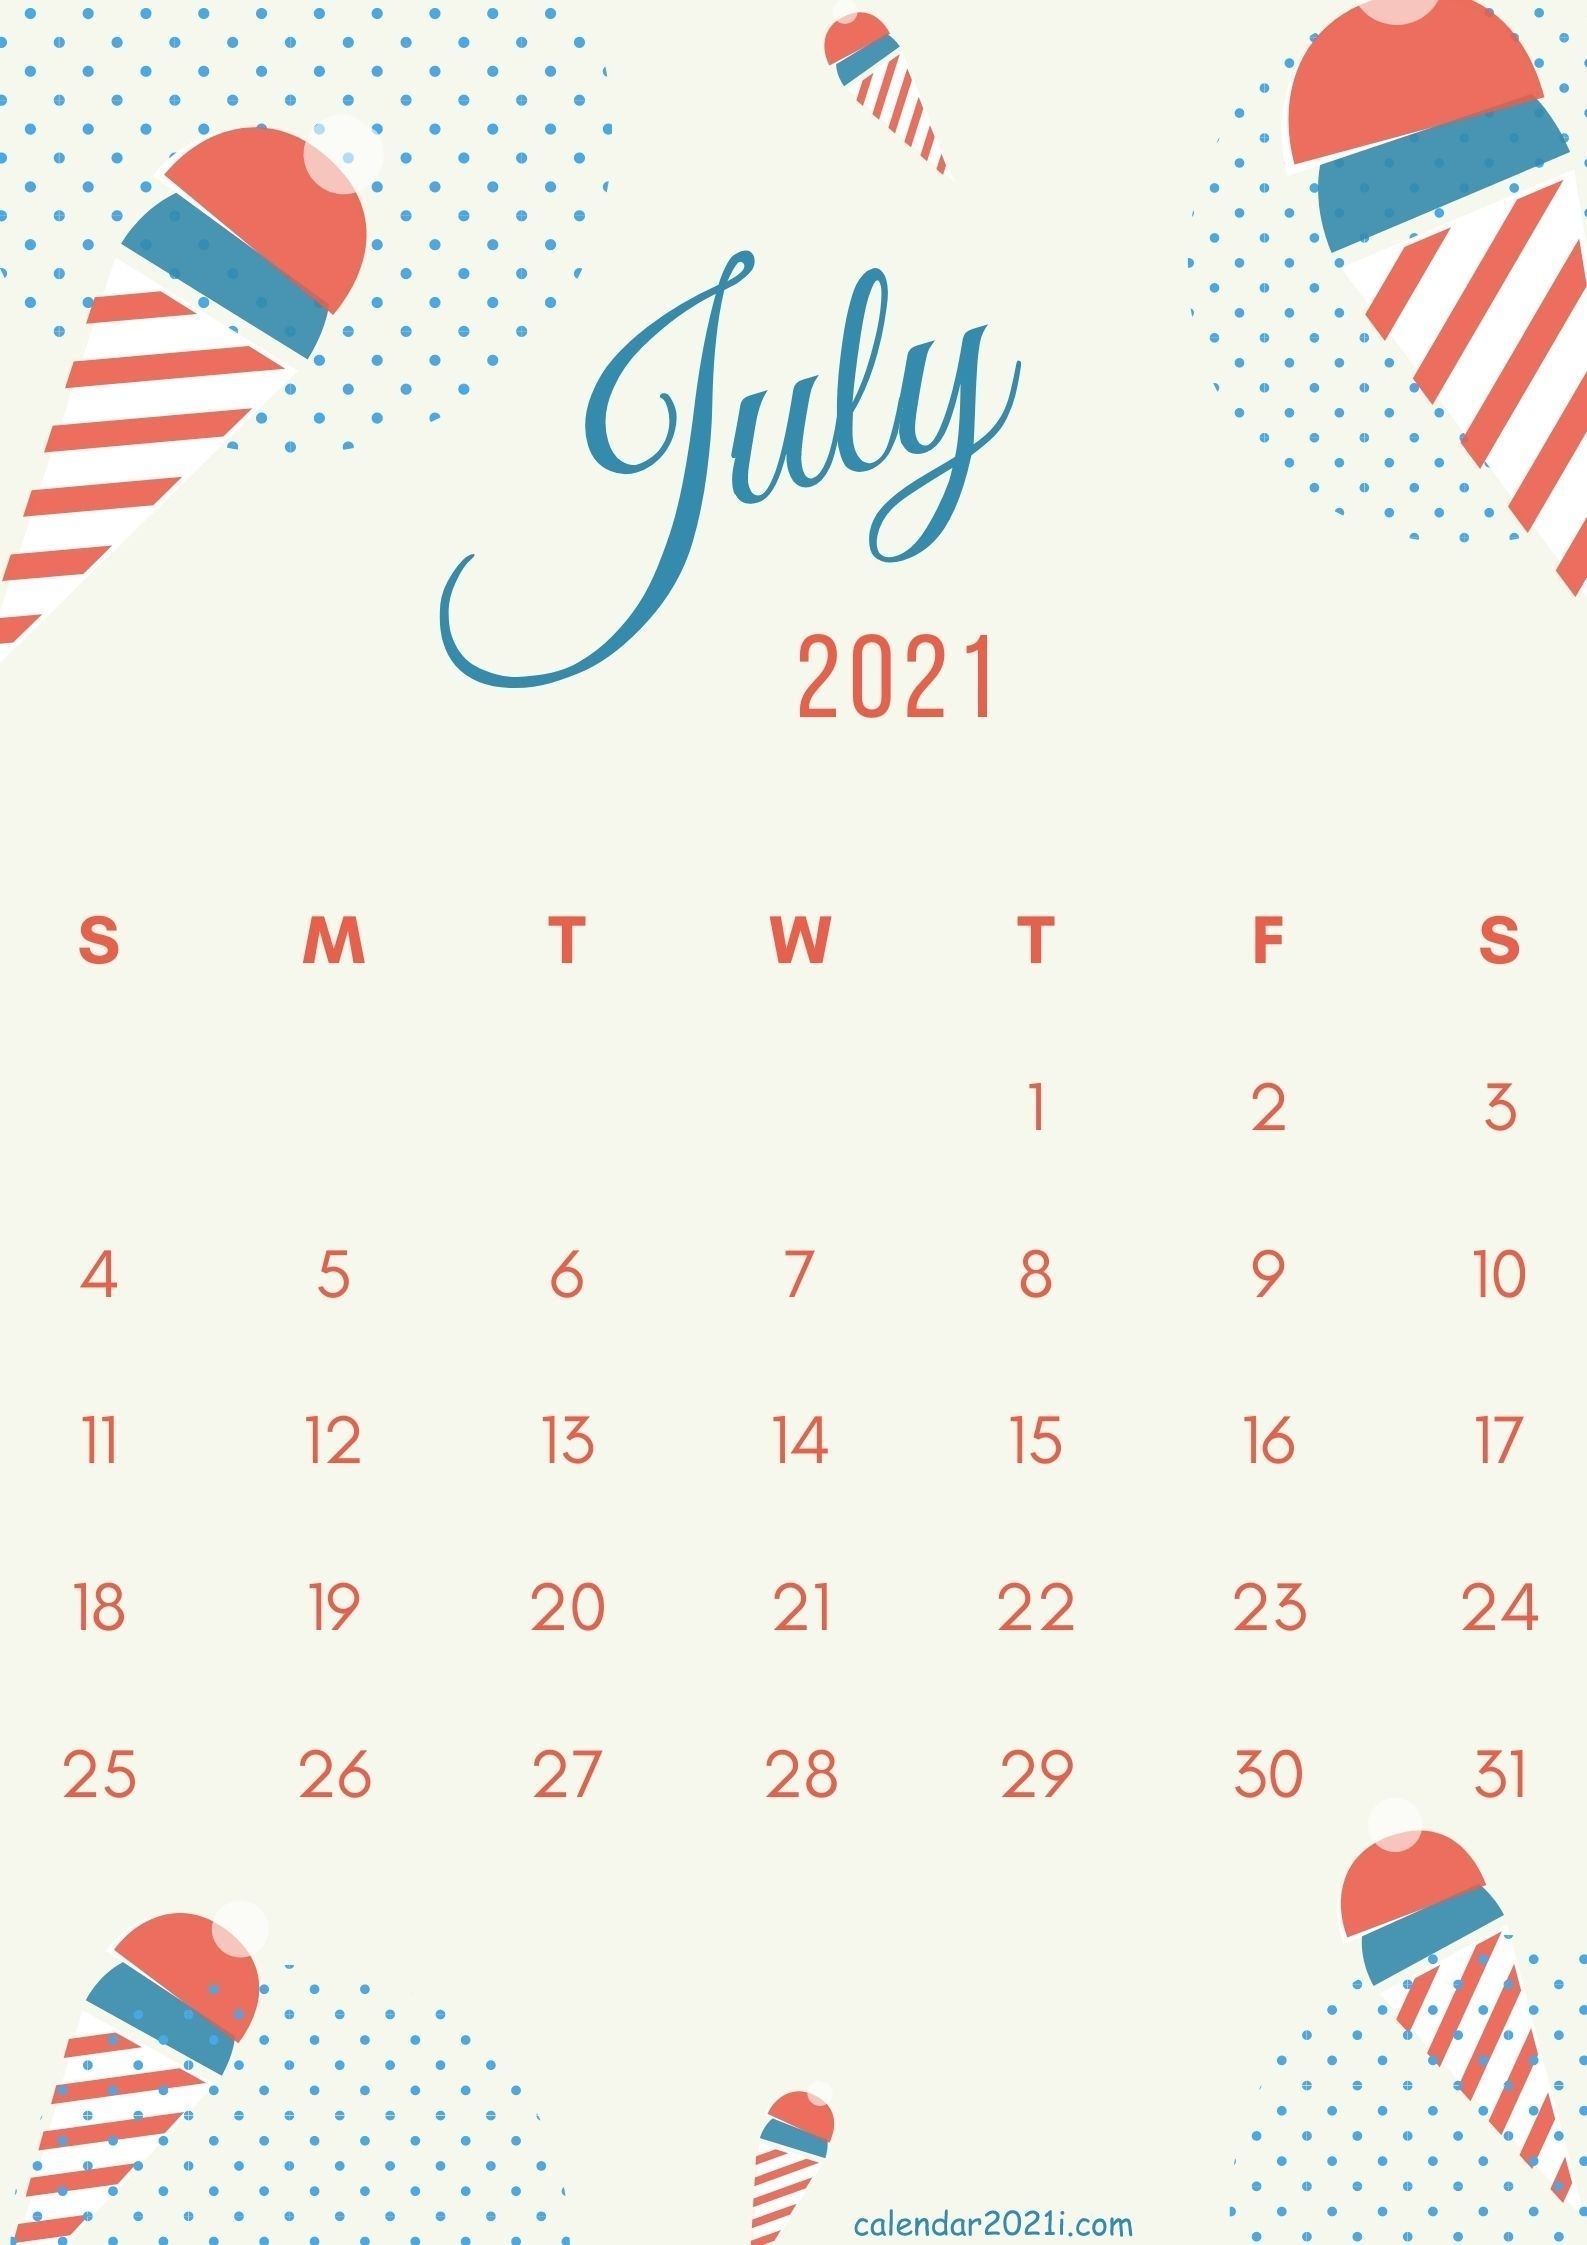 Cute July 2021 Calendar Design Template Theme Layout Free Download In 2020 | Calendar Design Cute August 2021 Calendar